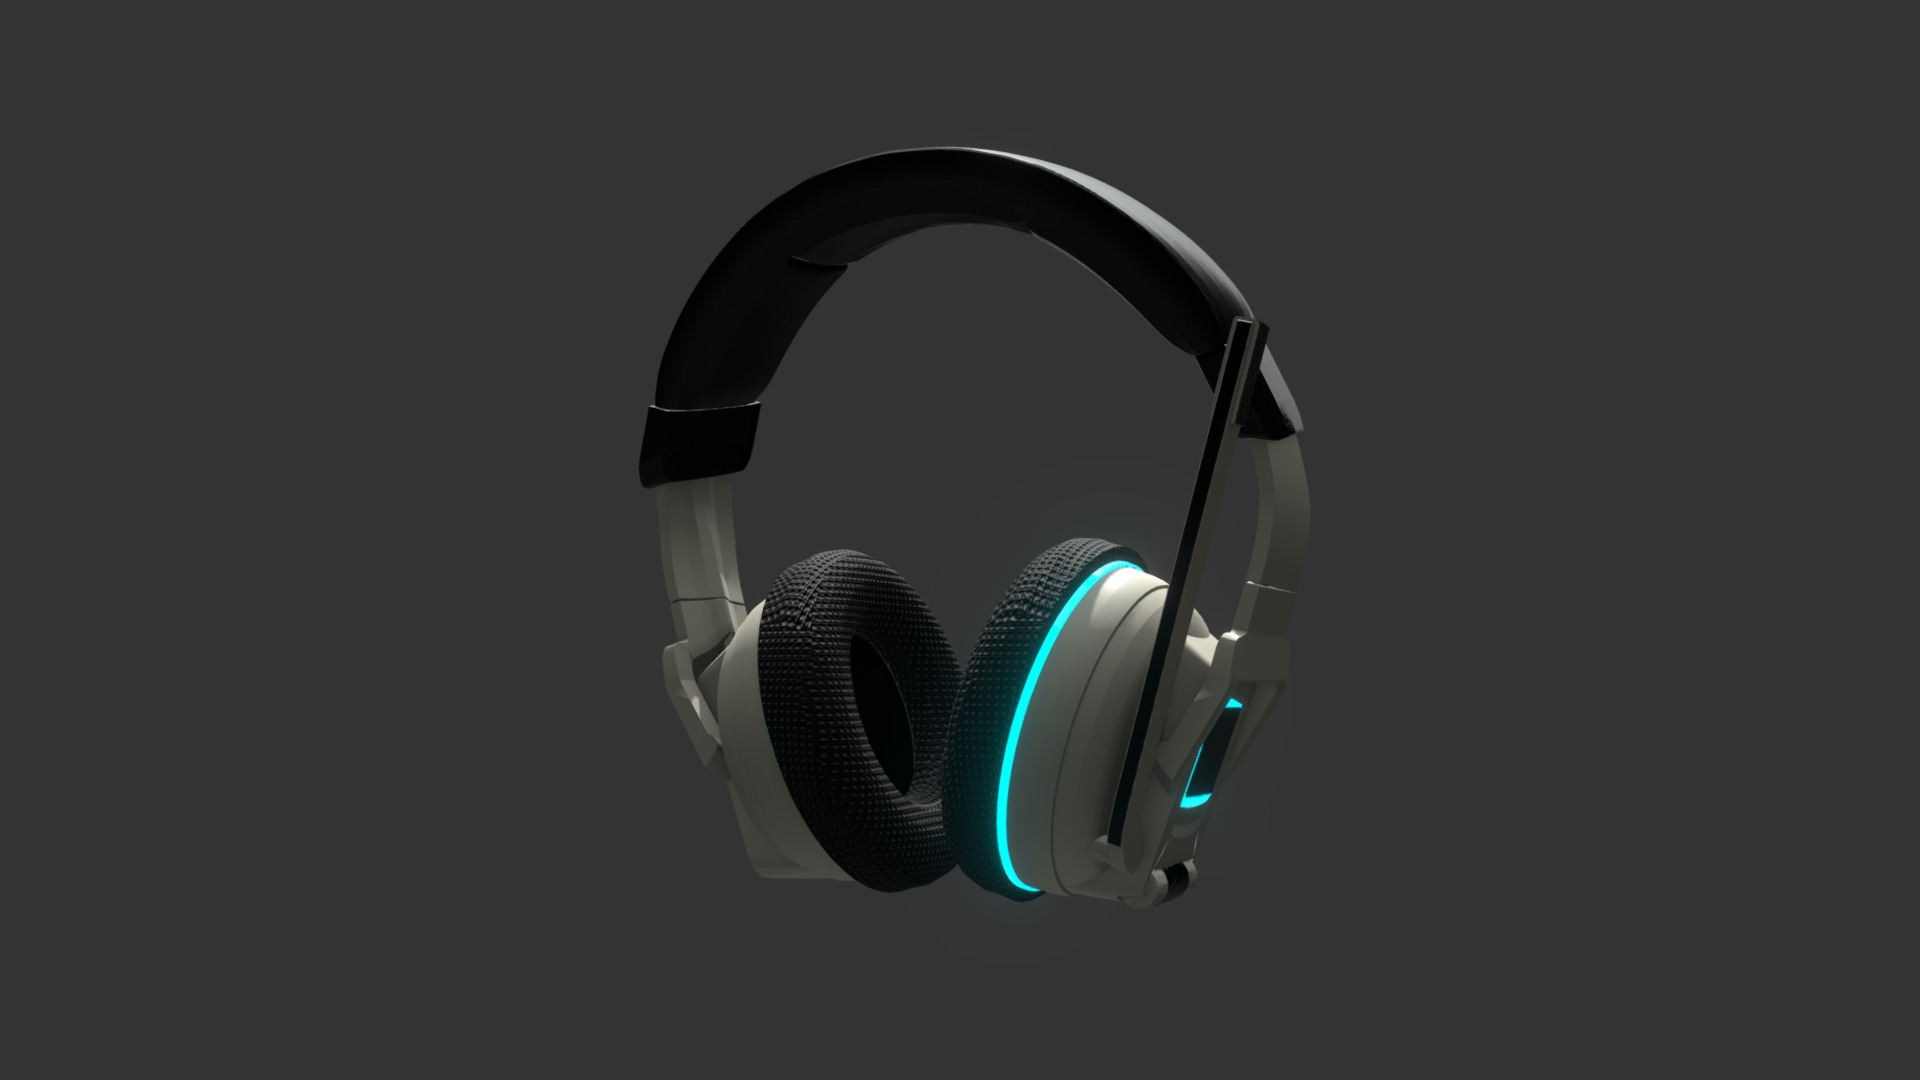 3D model Headphones 3D model - This is a 3D model of the Headphones 3D model. The 3D model is about a pair of headphones.